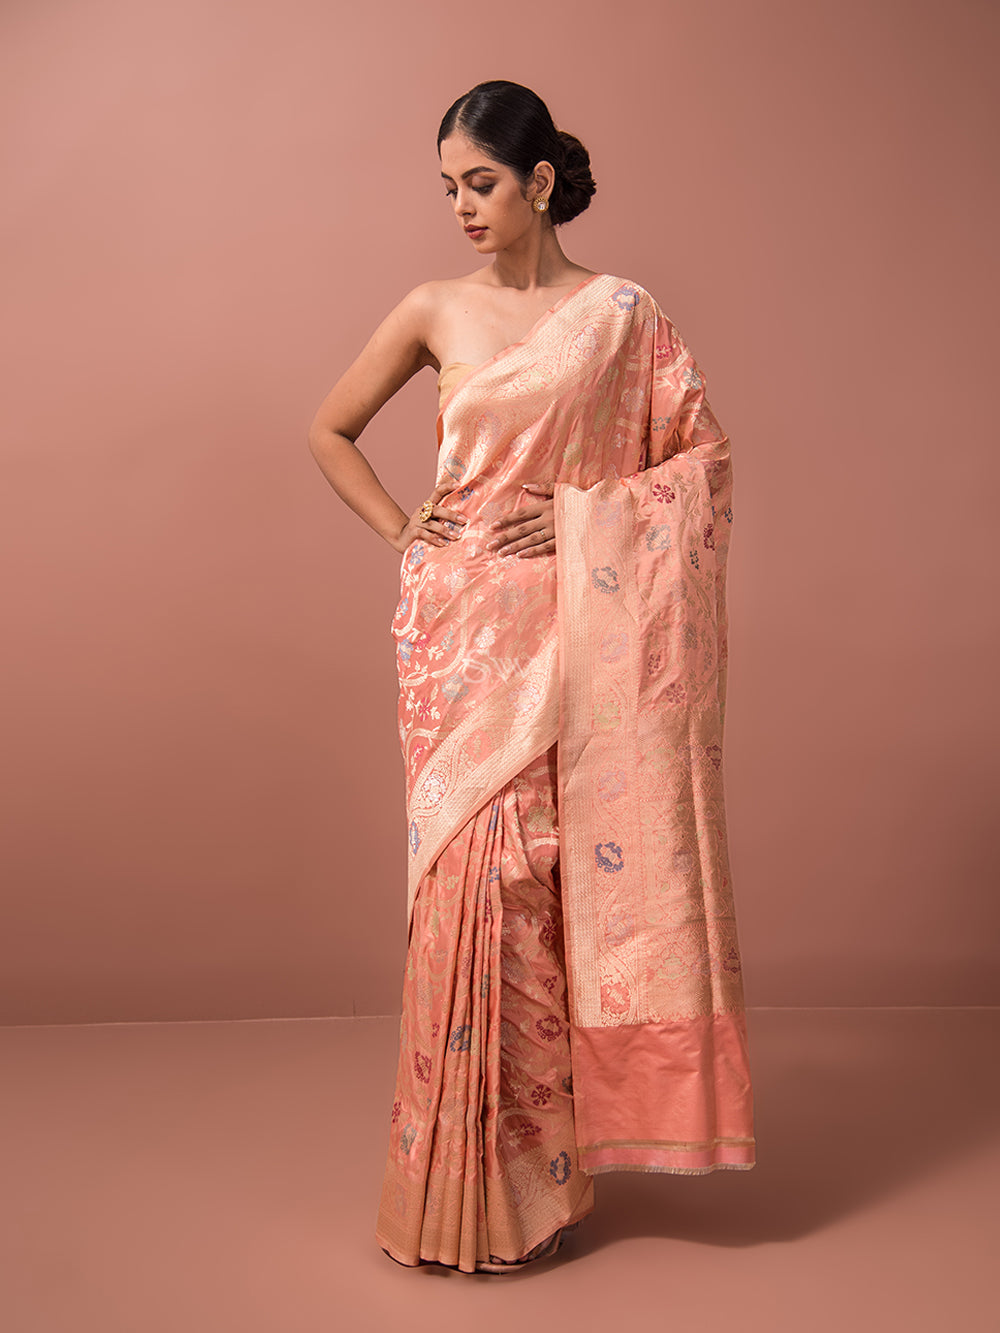 Buy Peach Banarasi Silk Indian Wedding Saree Online - SARV05923